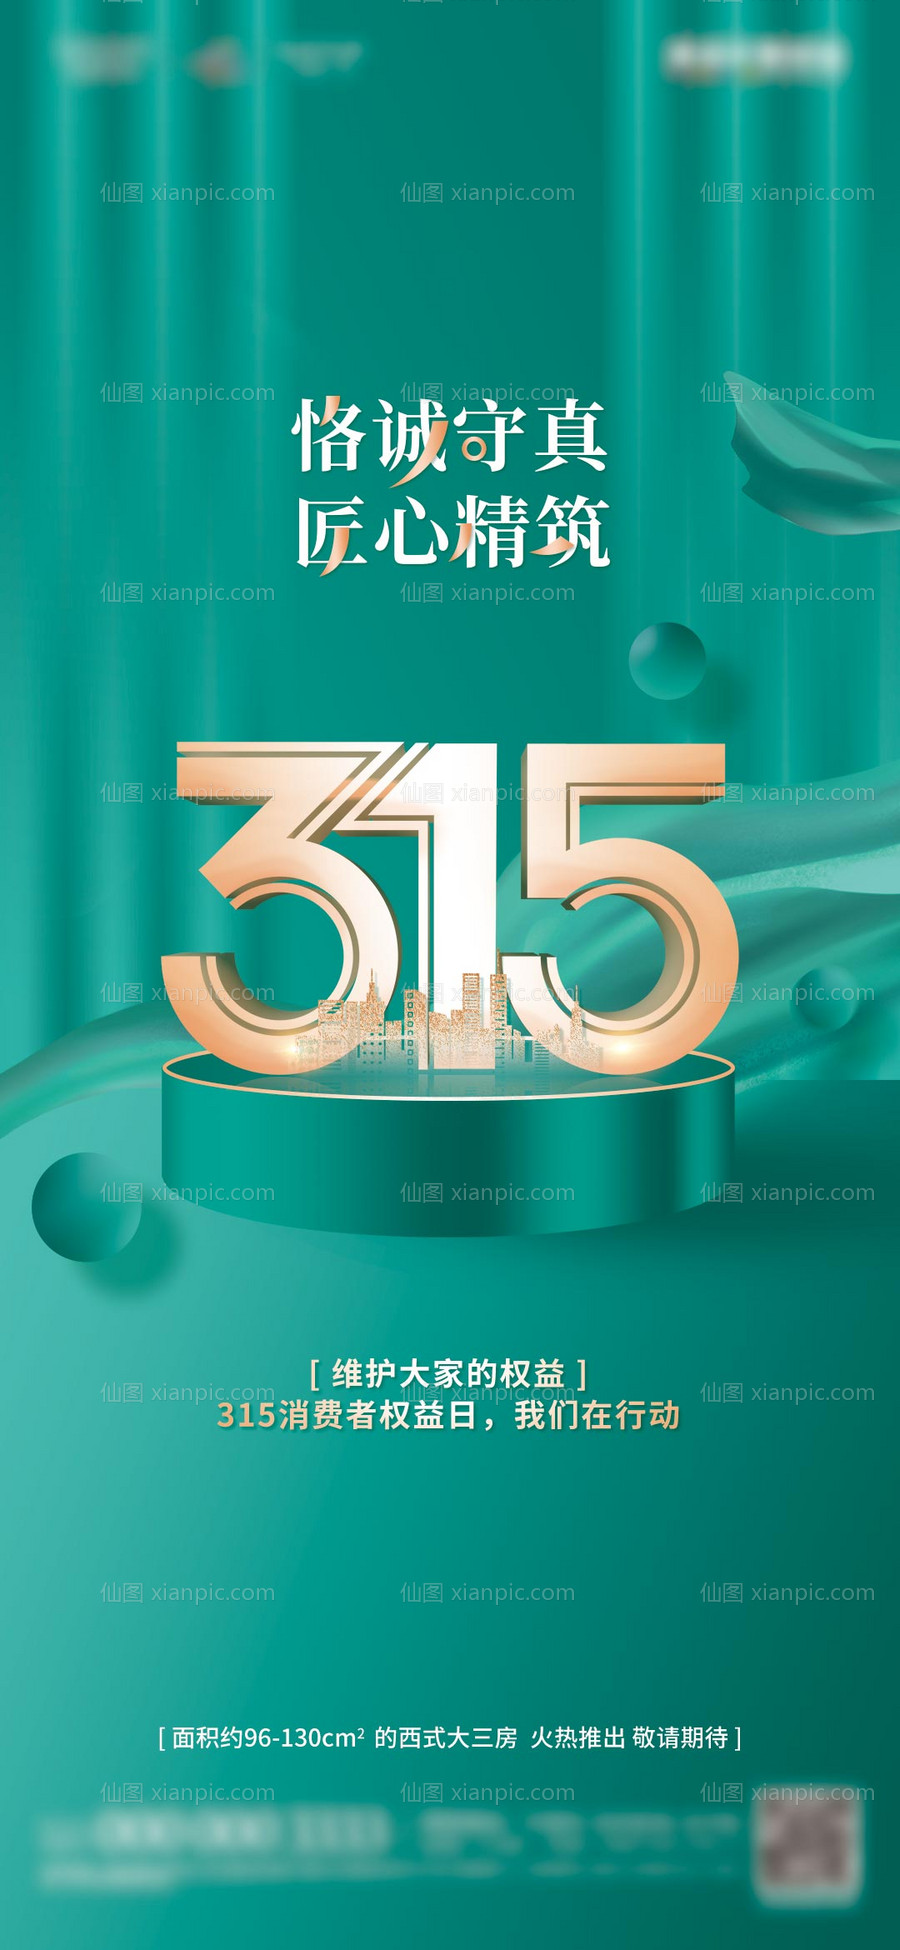 素材乐-地产315消费者权益日诚信宣传海报